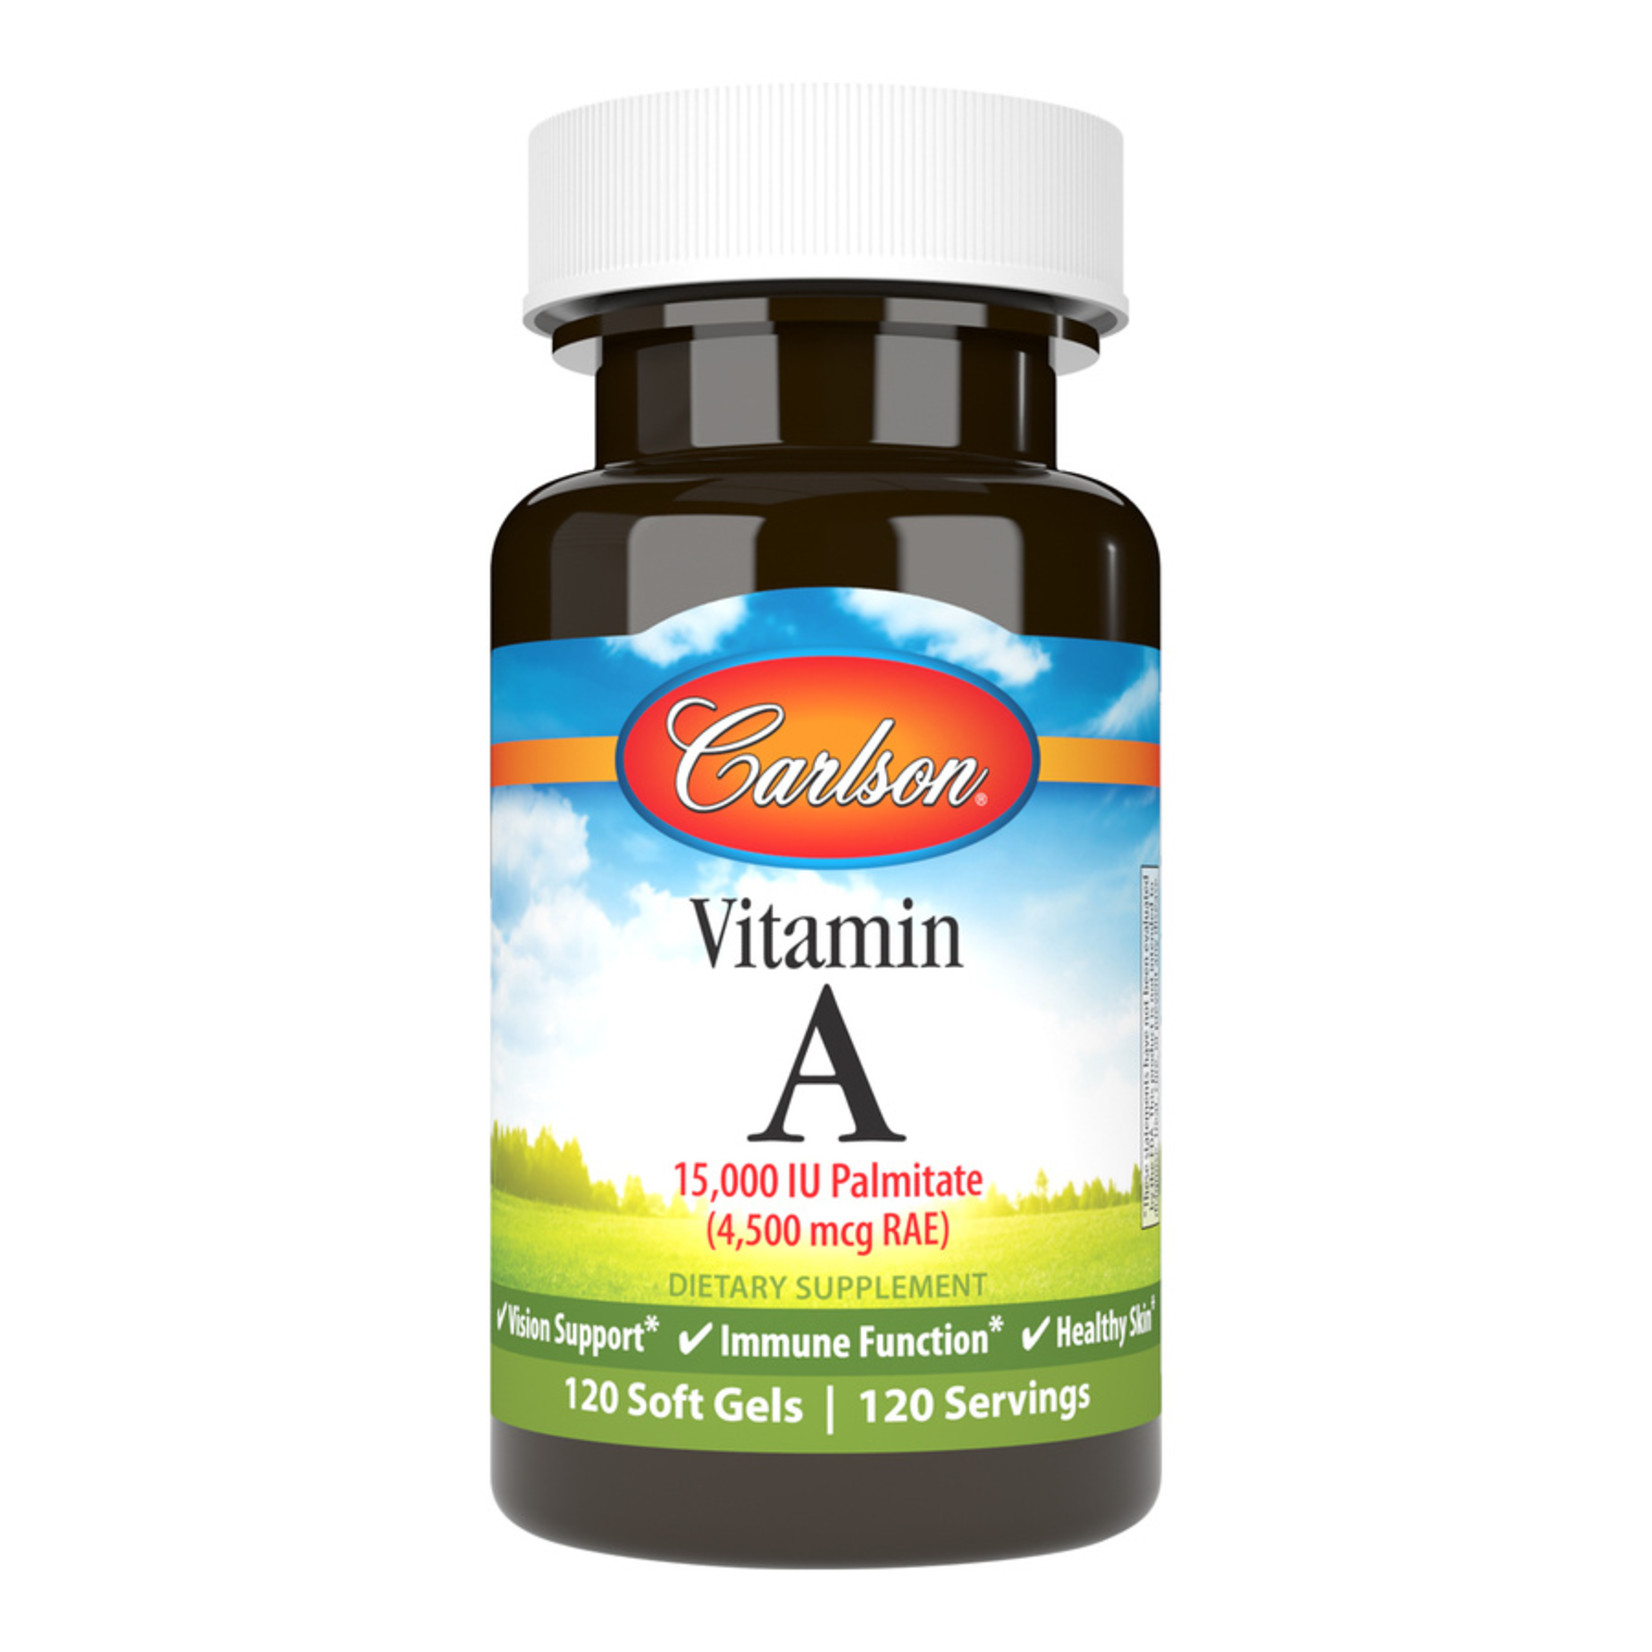 Carlson Carlson - Vitamin A 15,000 IU Palmitate - 120 Softgels